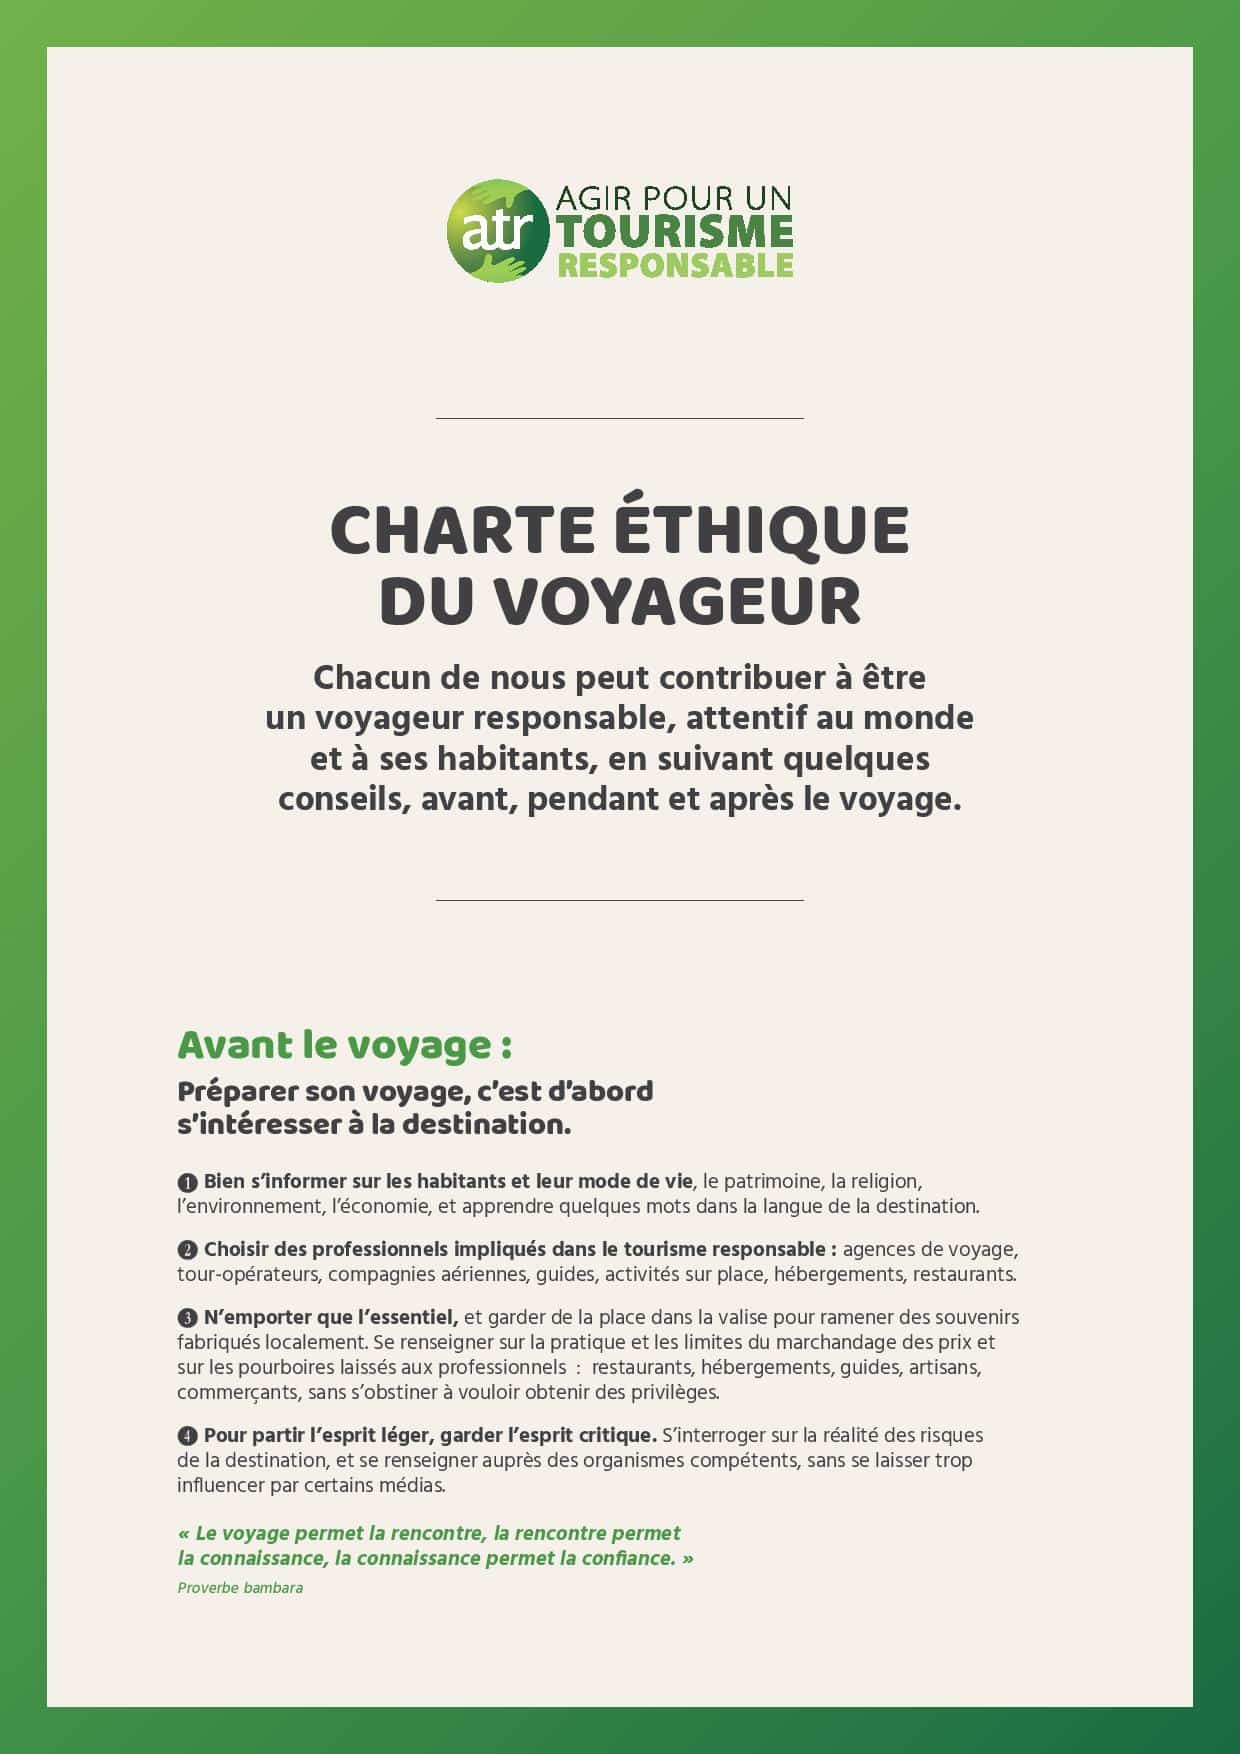 CHARTE-ETHIQUE-DU-VOYAGEUR-ATR-2016-page-001-1